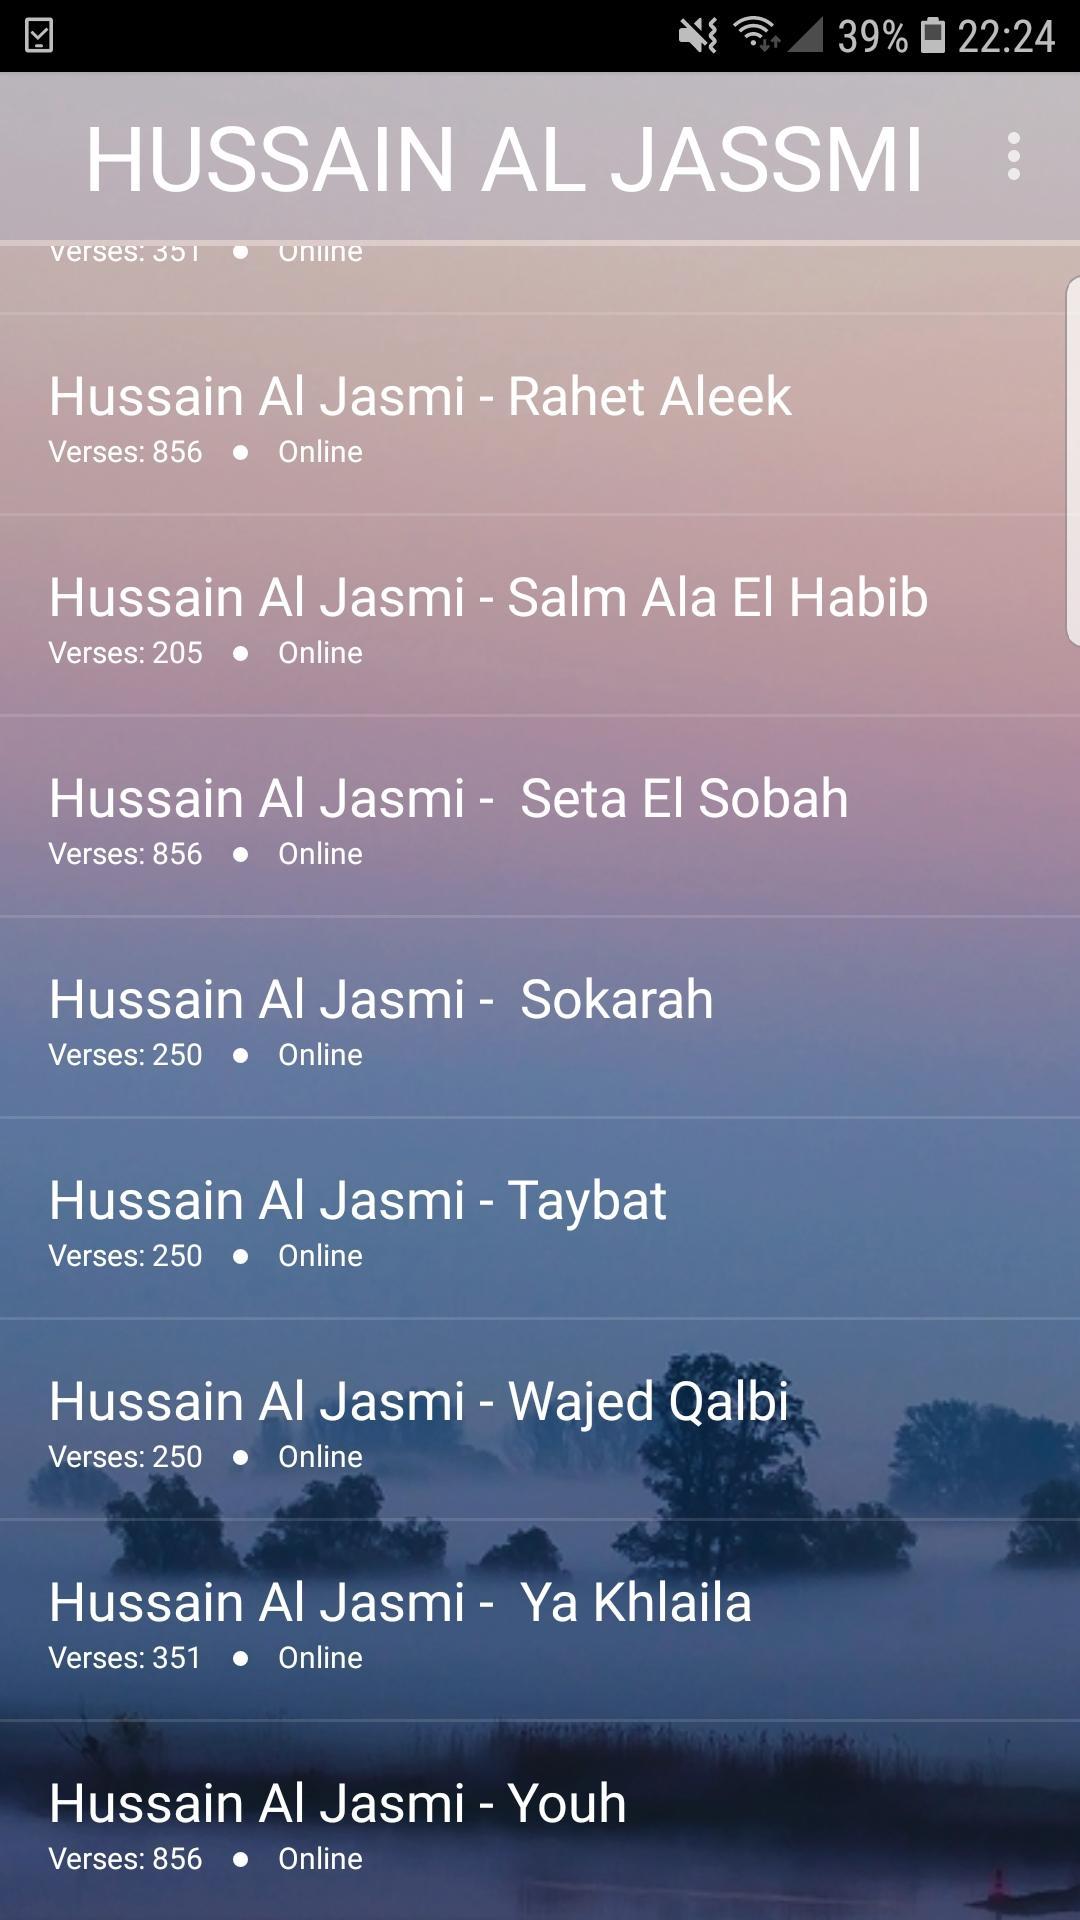 اغاني حسين الجسمي2019-Aghani Hussein Jasmi mp3 for Android - APK Download